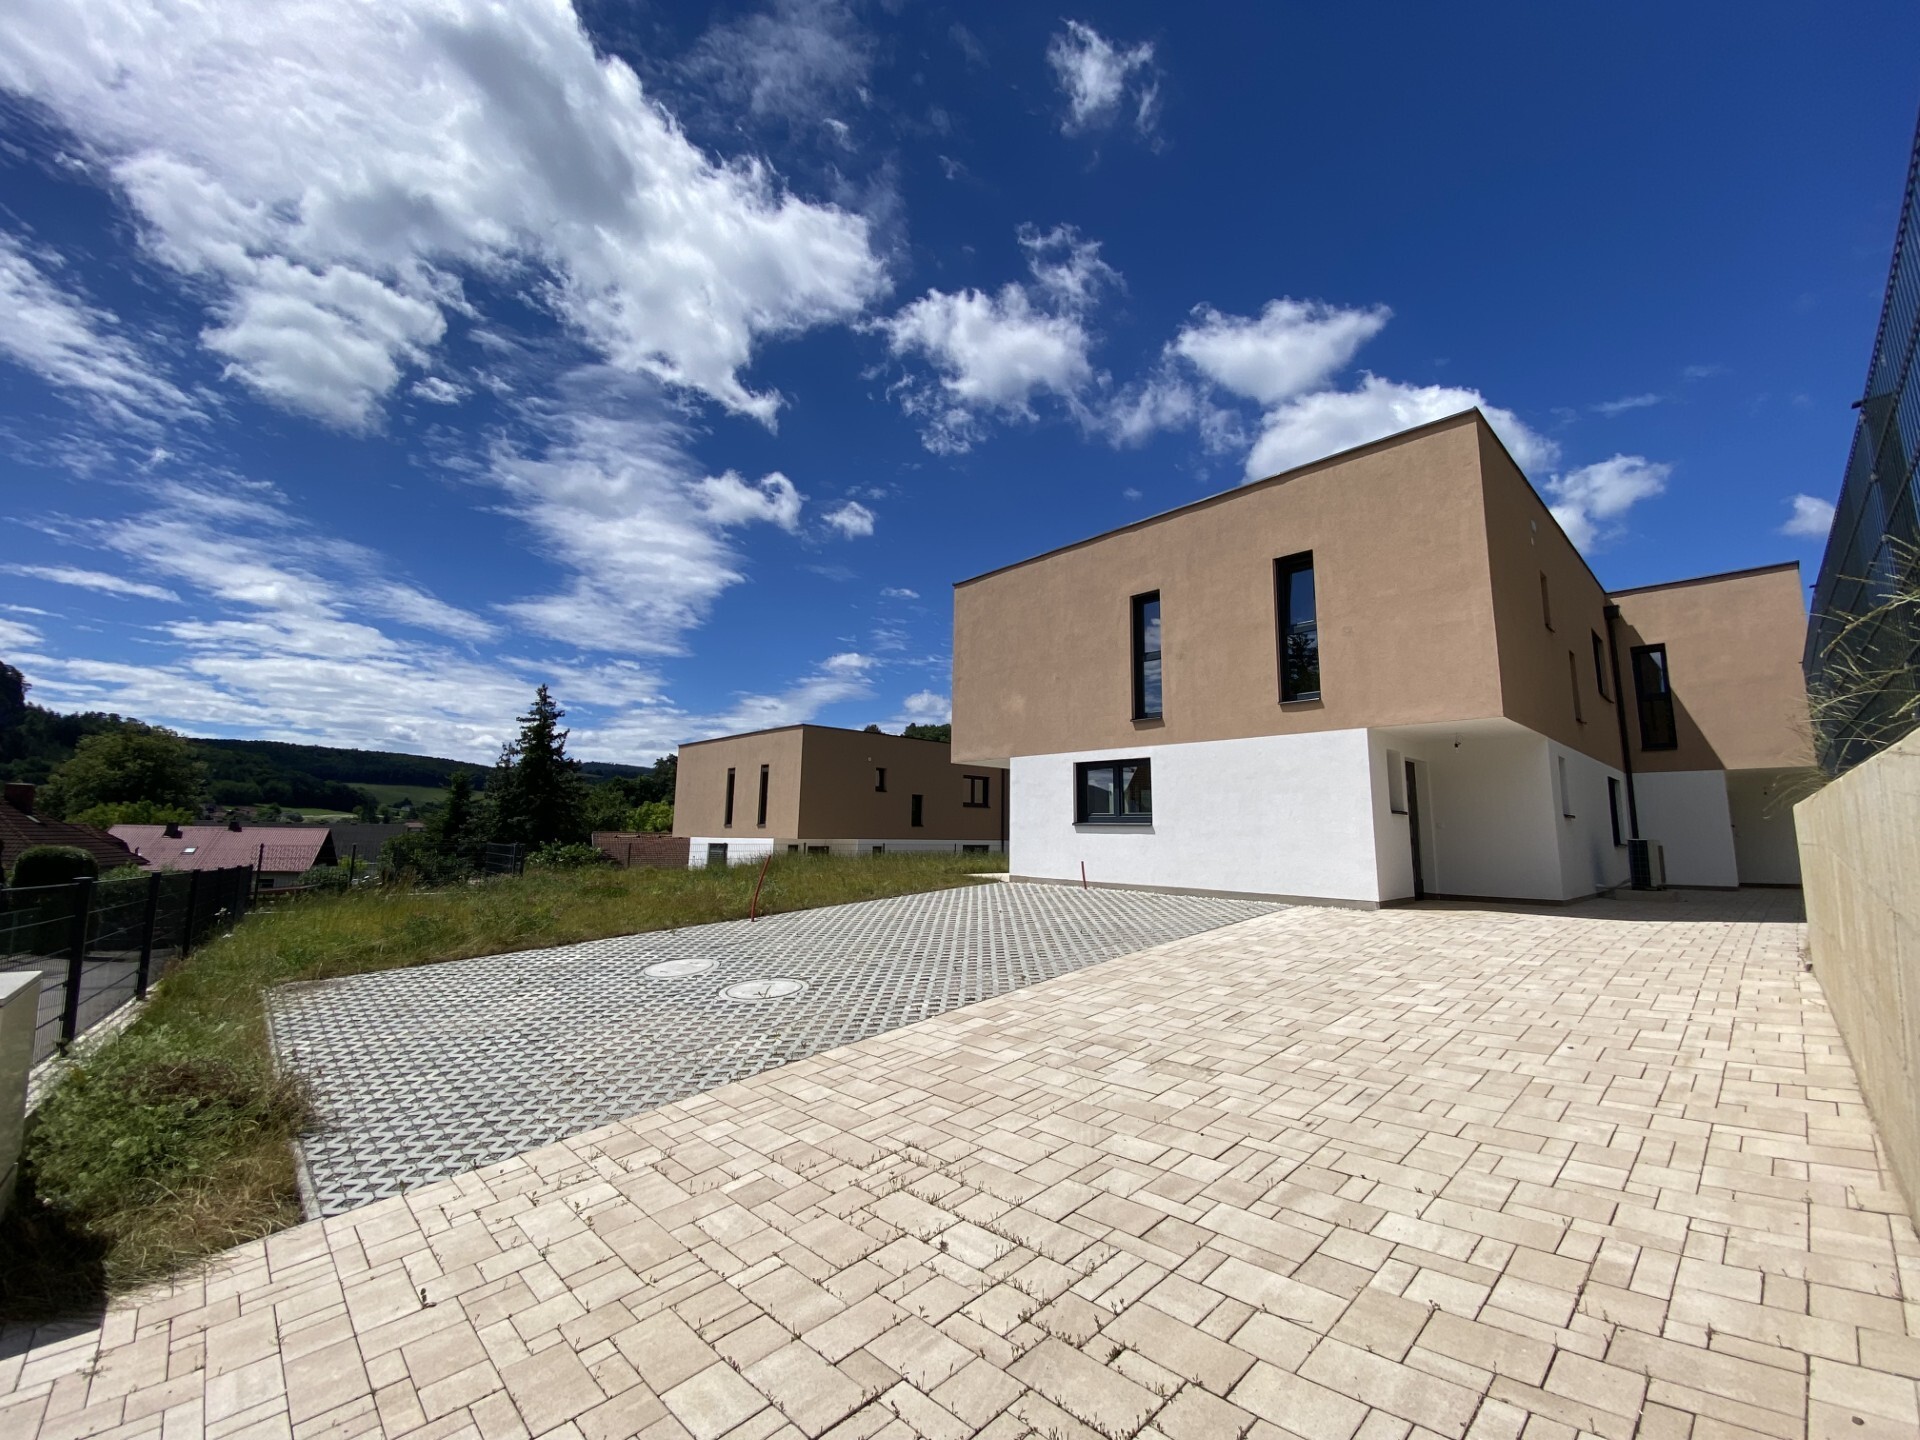 Ziegelmassiv-Doppelhaus auf Eigengrund mit Luft-Wasser-Wärmepumpe - zu kaufen in 2534 Alland